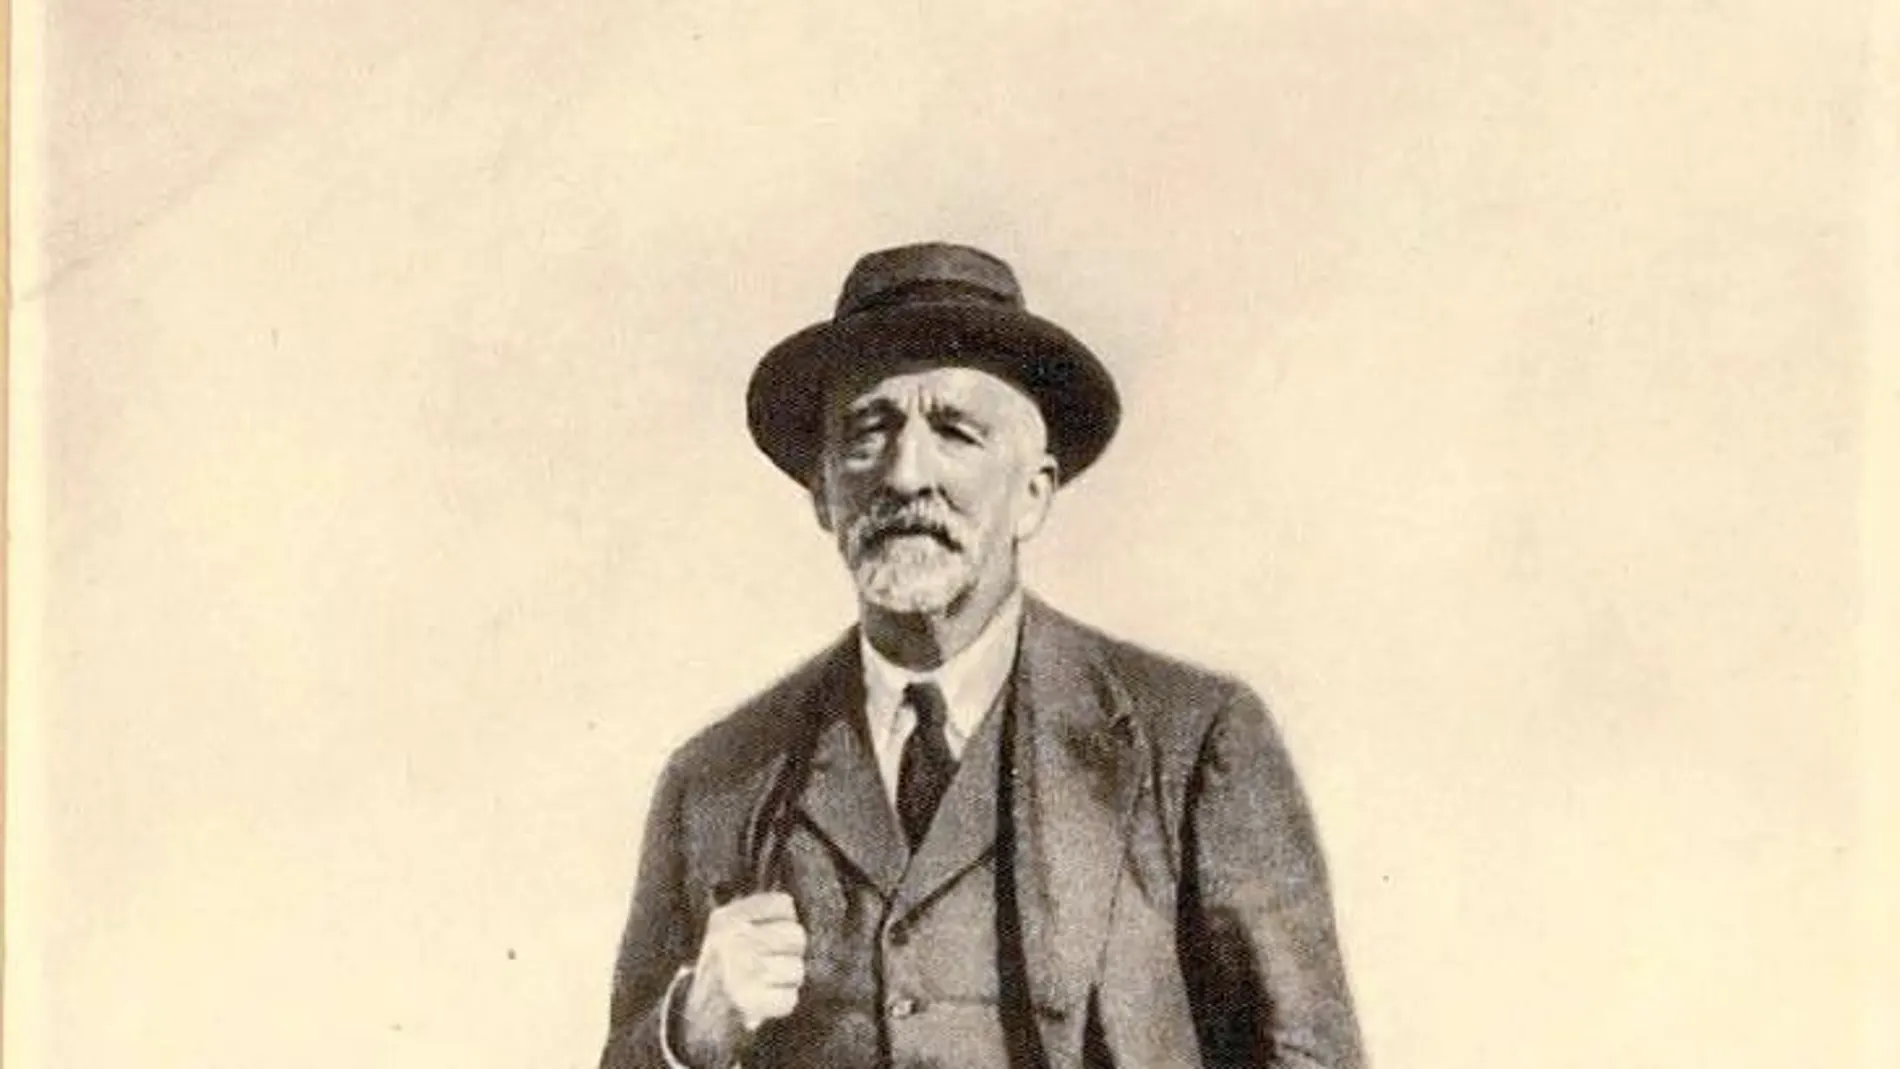 Imagen de Manuel B. Cossío realizada por Padrós en torno al año 1920